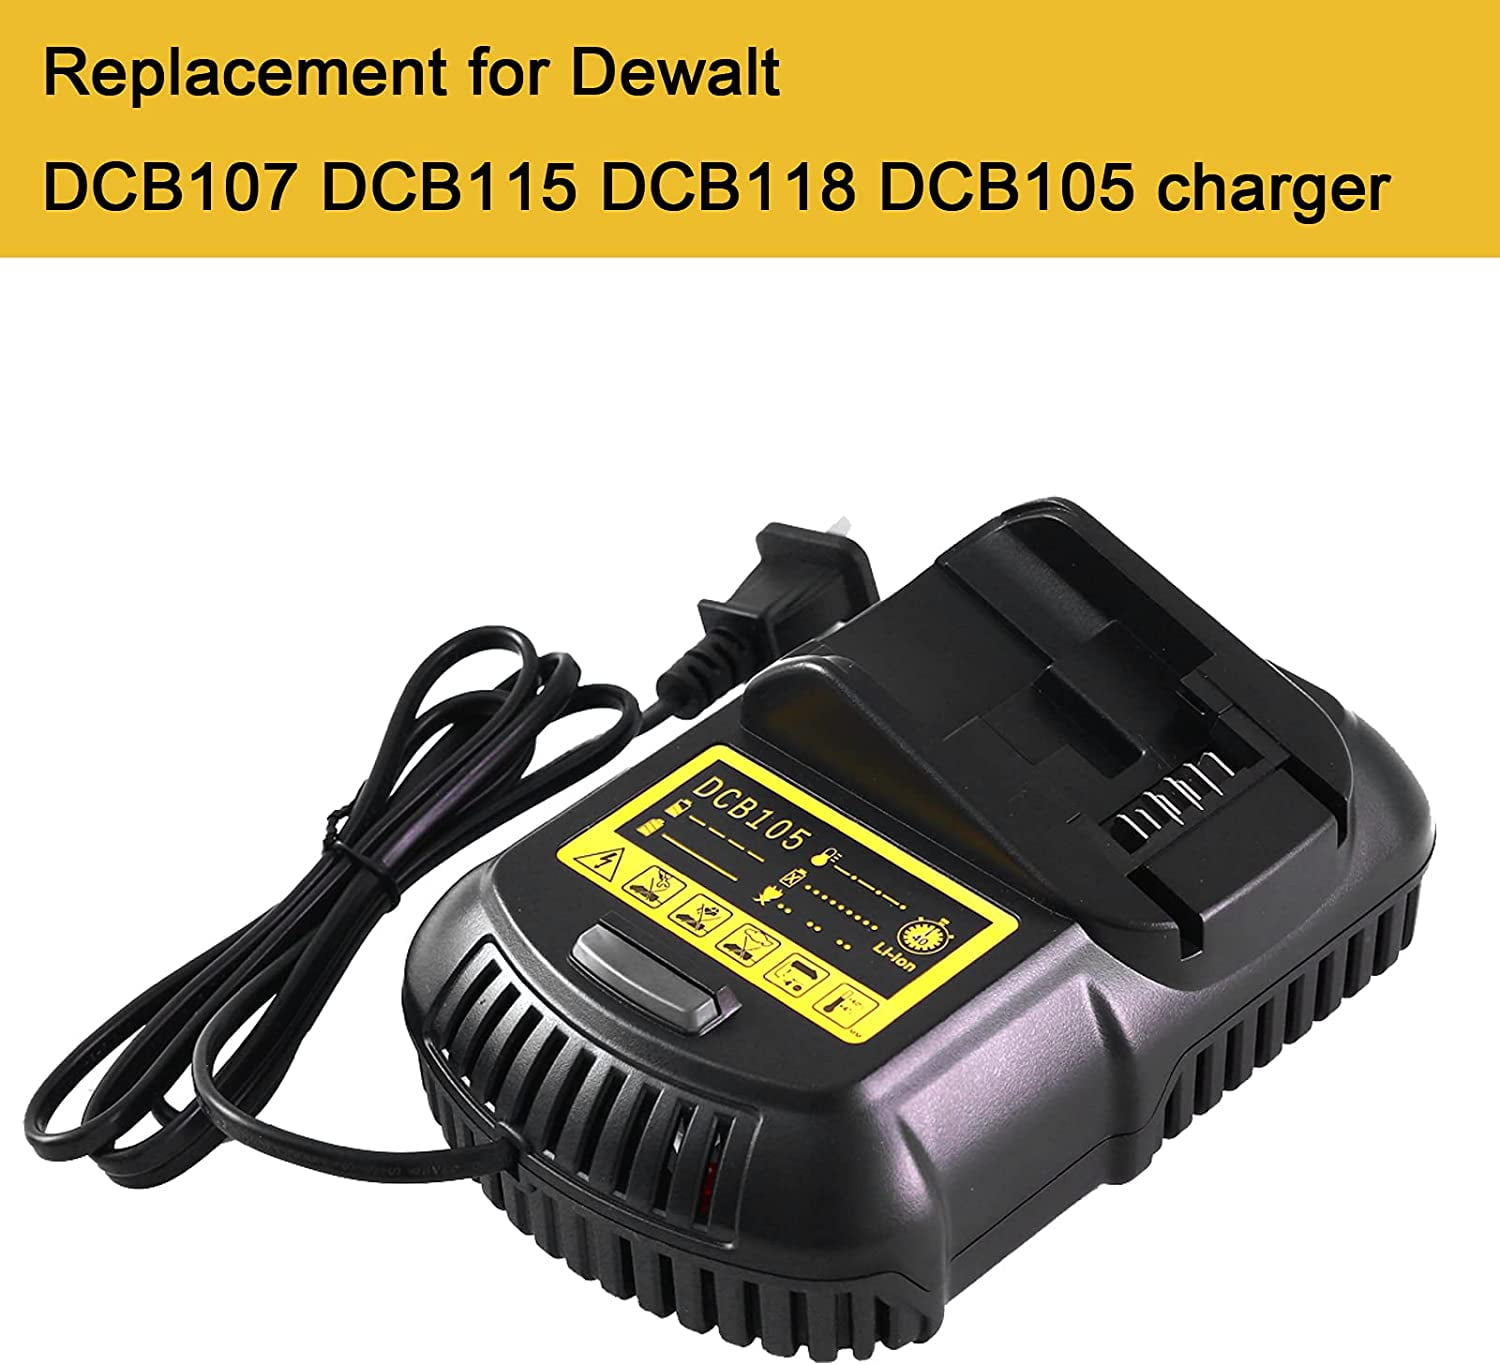 DCB105 Charger Compatible with Dewalt 12V/20V MAX Lithium-ion Battery DCB101 DCB107 DCB203 DCB204 DCB206 DCB201 DCB120 DCB127 - Walmart.com